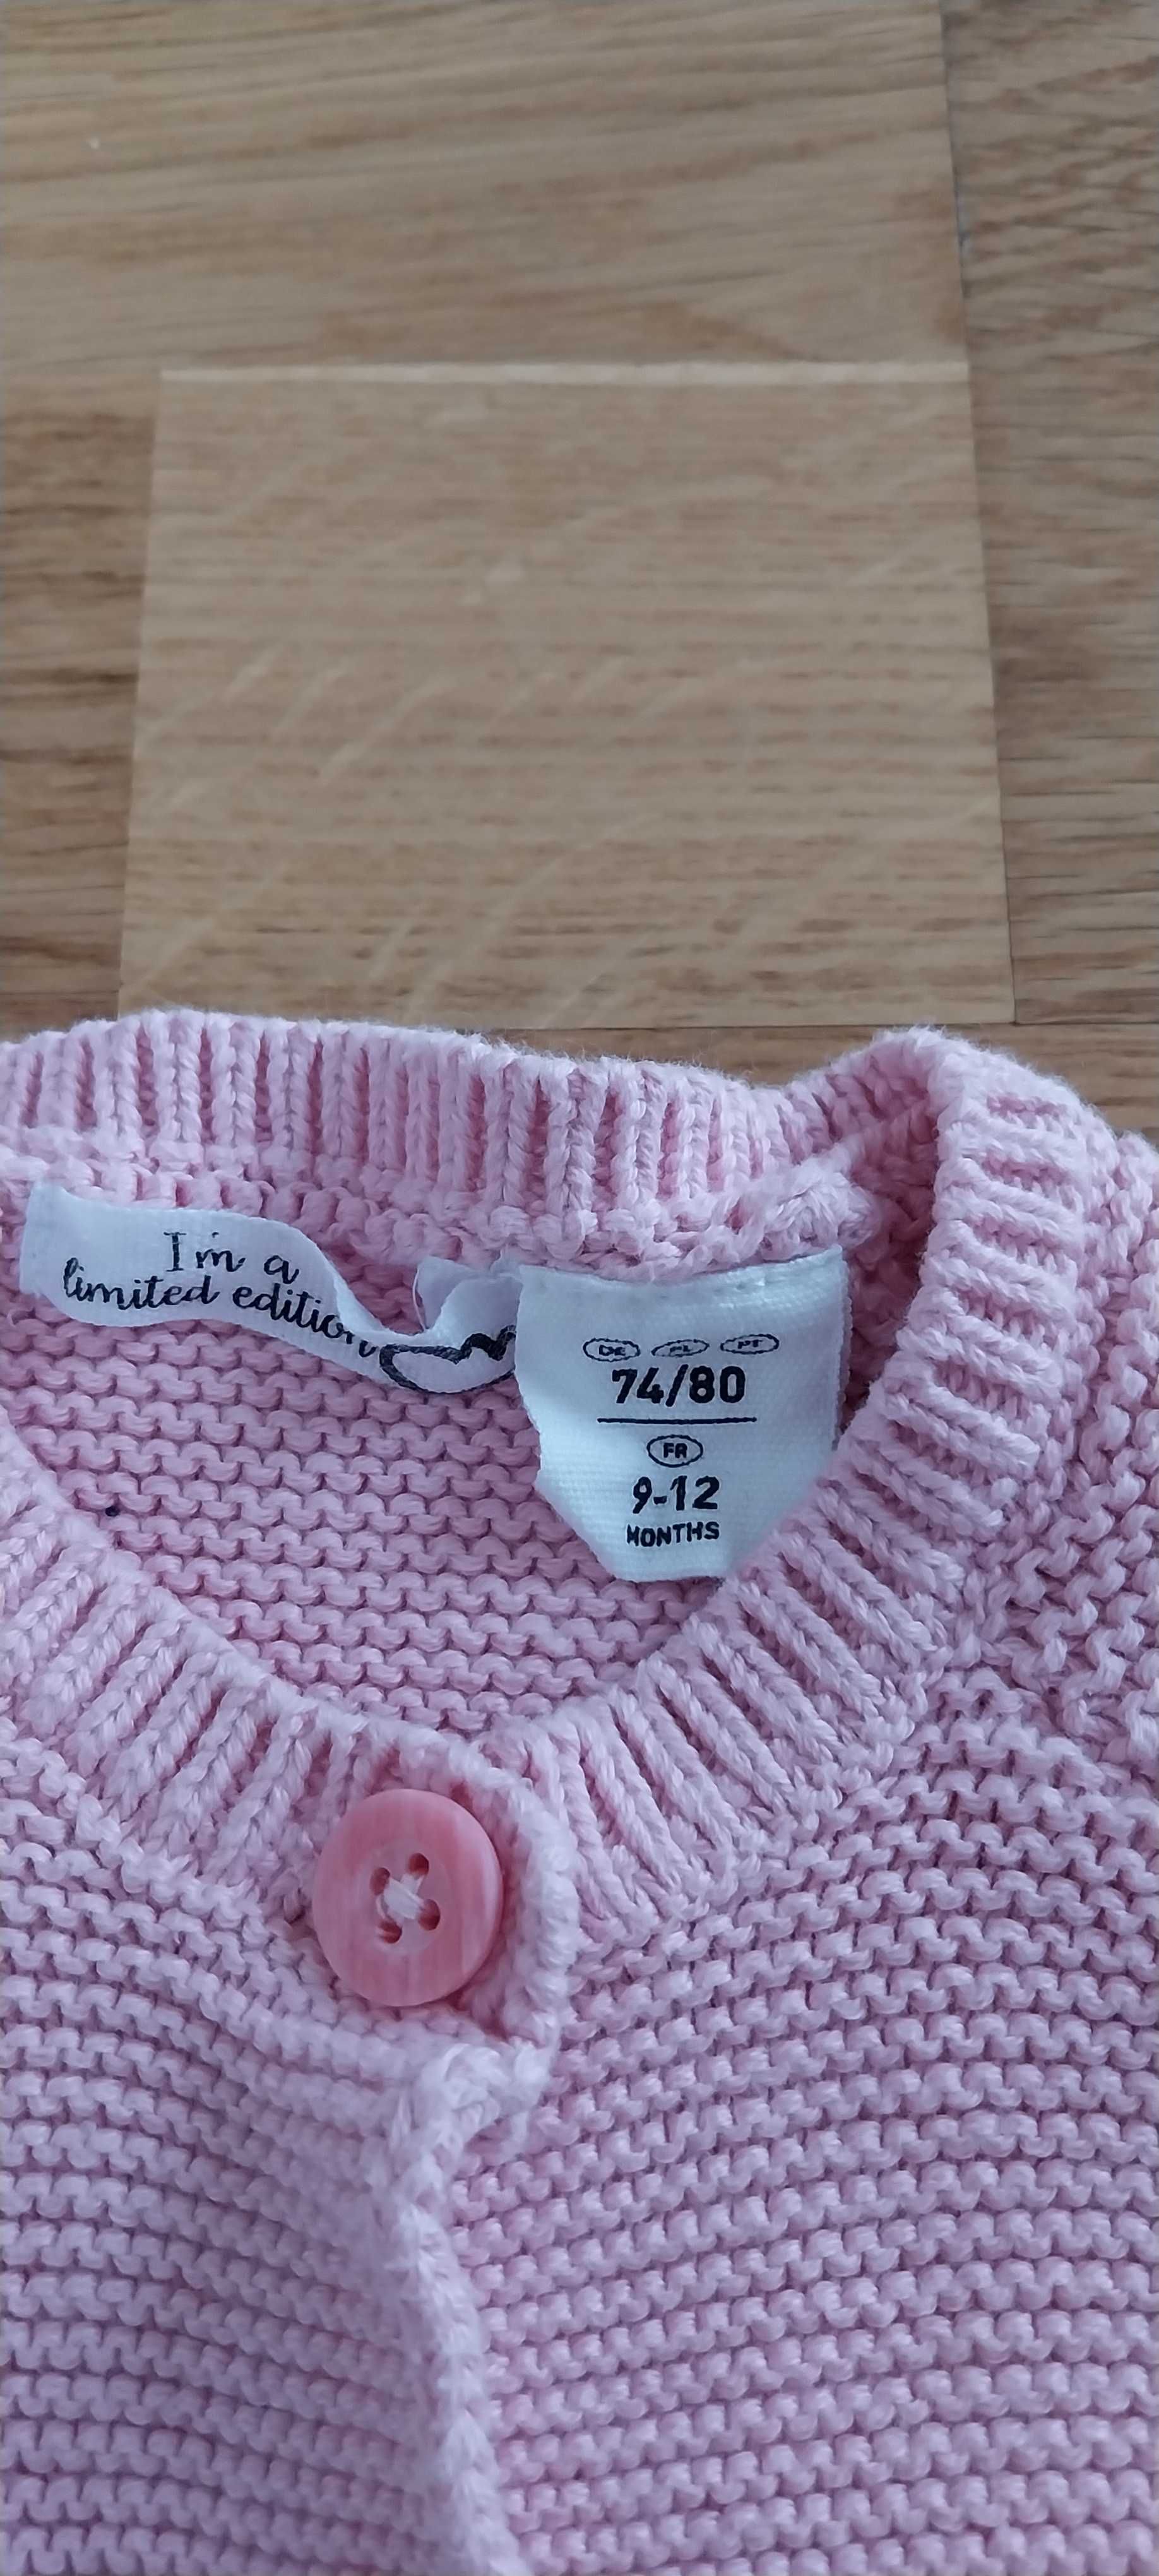 Sweterek niemowlęcy rozm. 74/80, stan idealny.